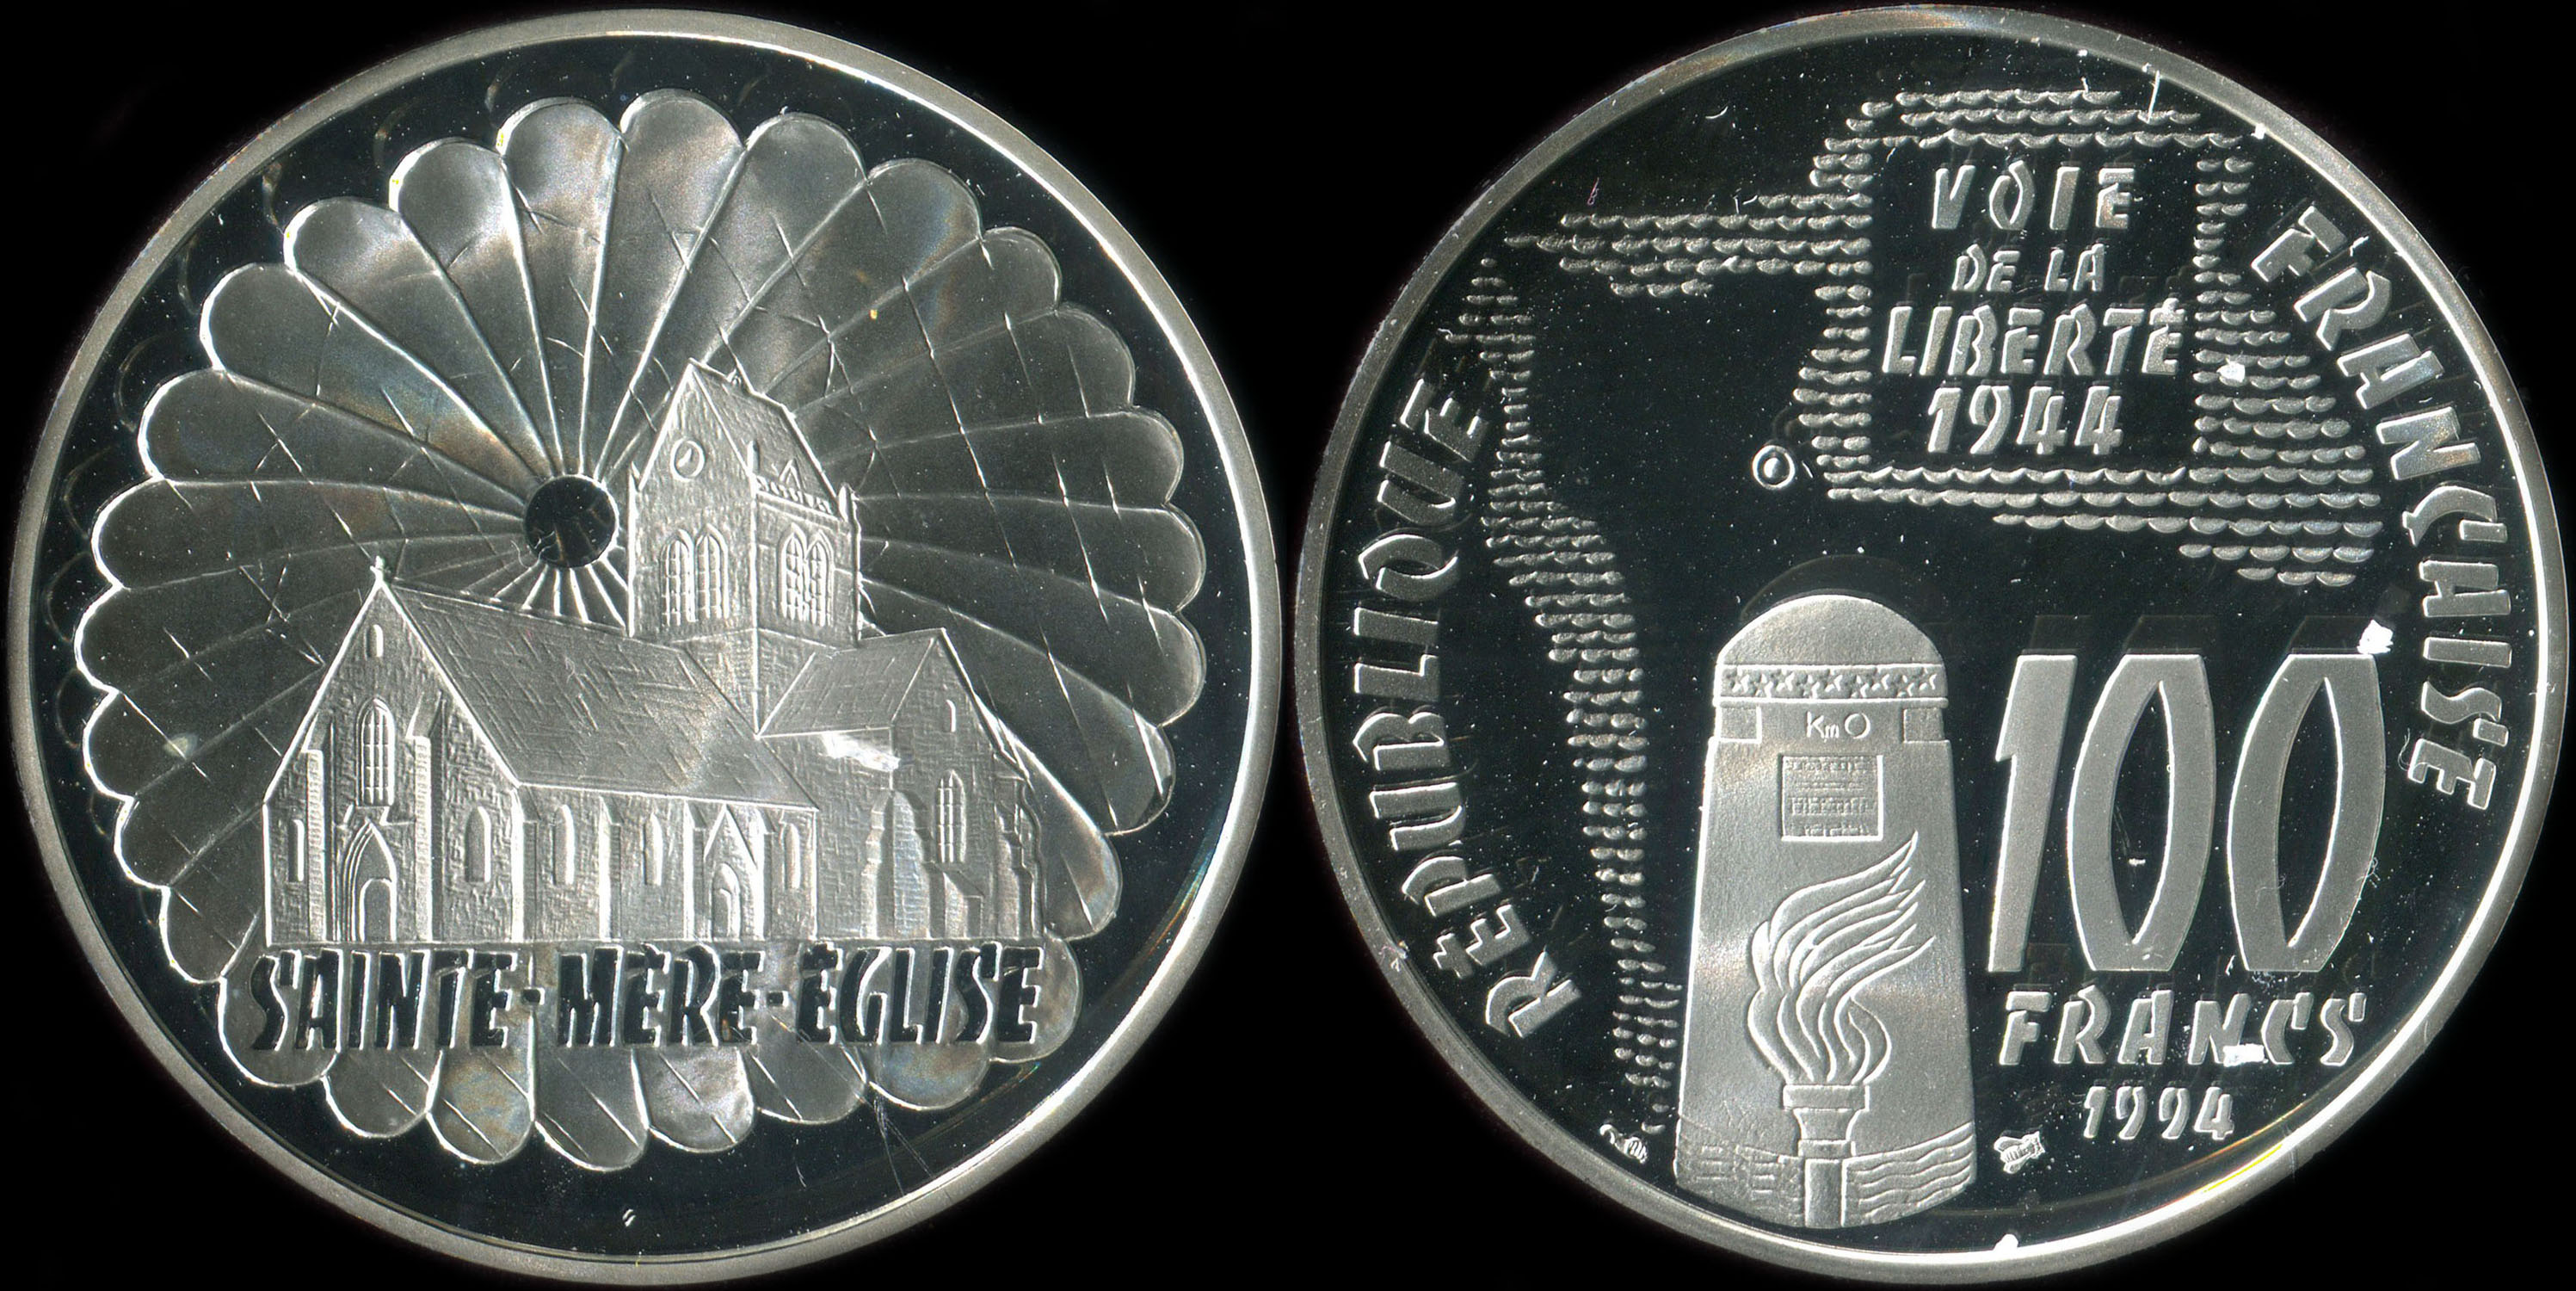 Pice de 100 francs 1994 - La Libert retrouve - Sainte-Mère-Église